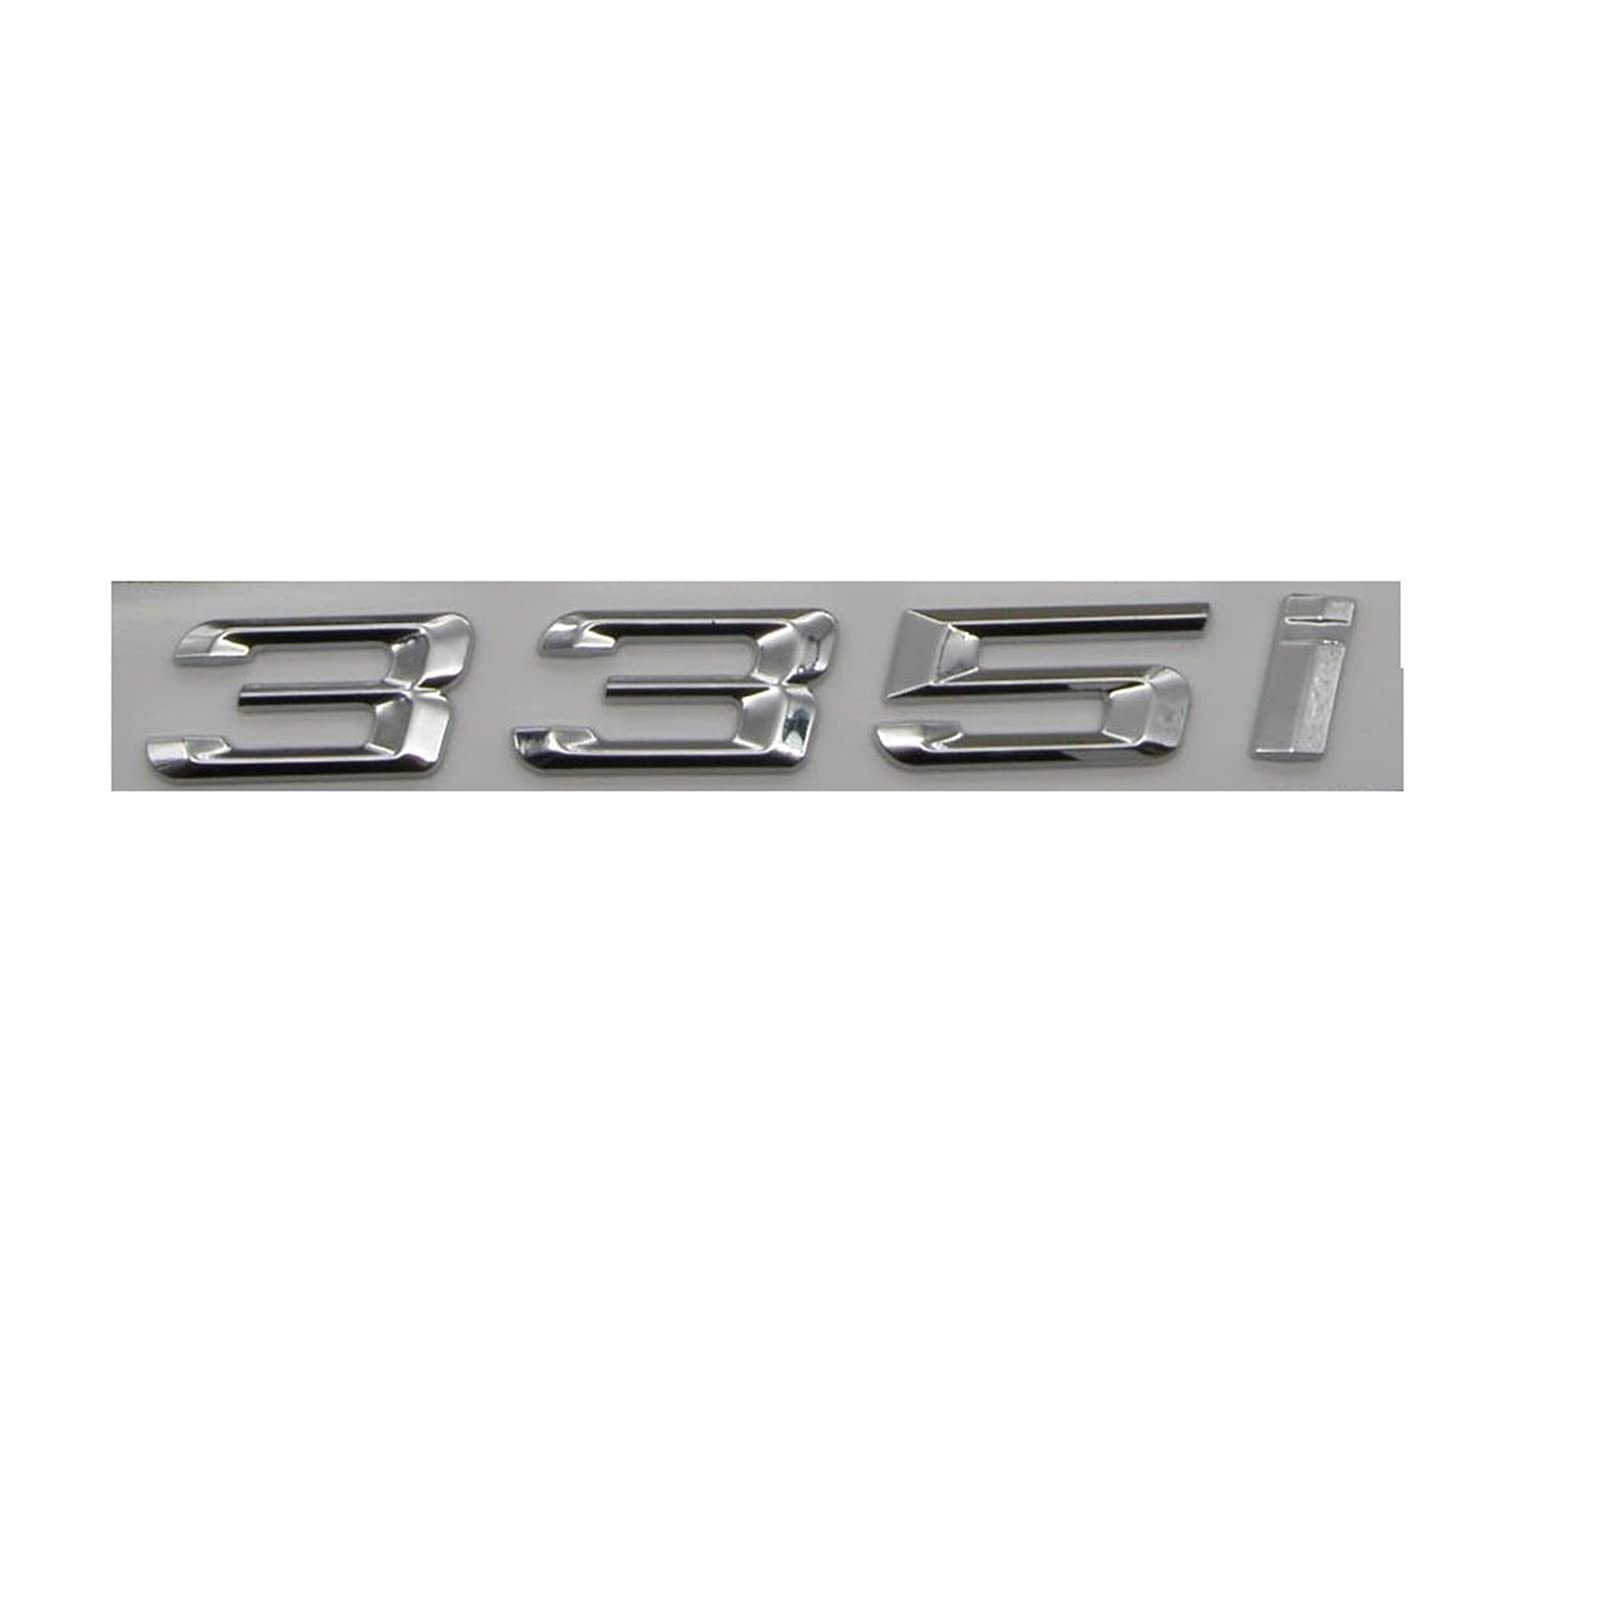 BMINO Chrom glänzend Silber ABS Zahl Buchstaben Wort Auto Kofferraum Abzeichen Emblem Buchstabe Aufkleber Aufkleber kompatibel mit BMW 3er Serie 335i Logo-Aufkleber von BMINO